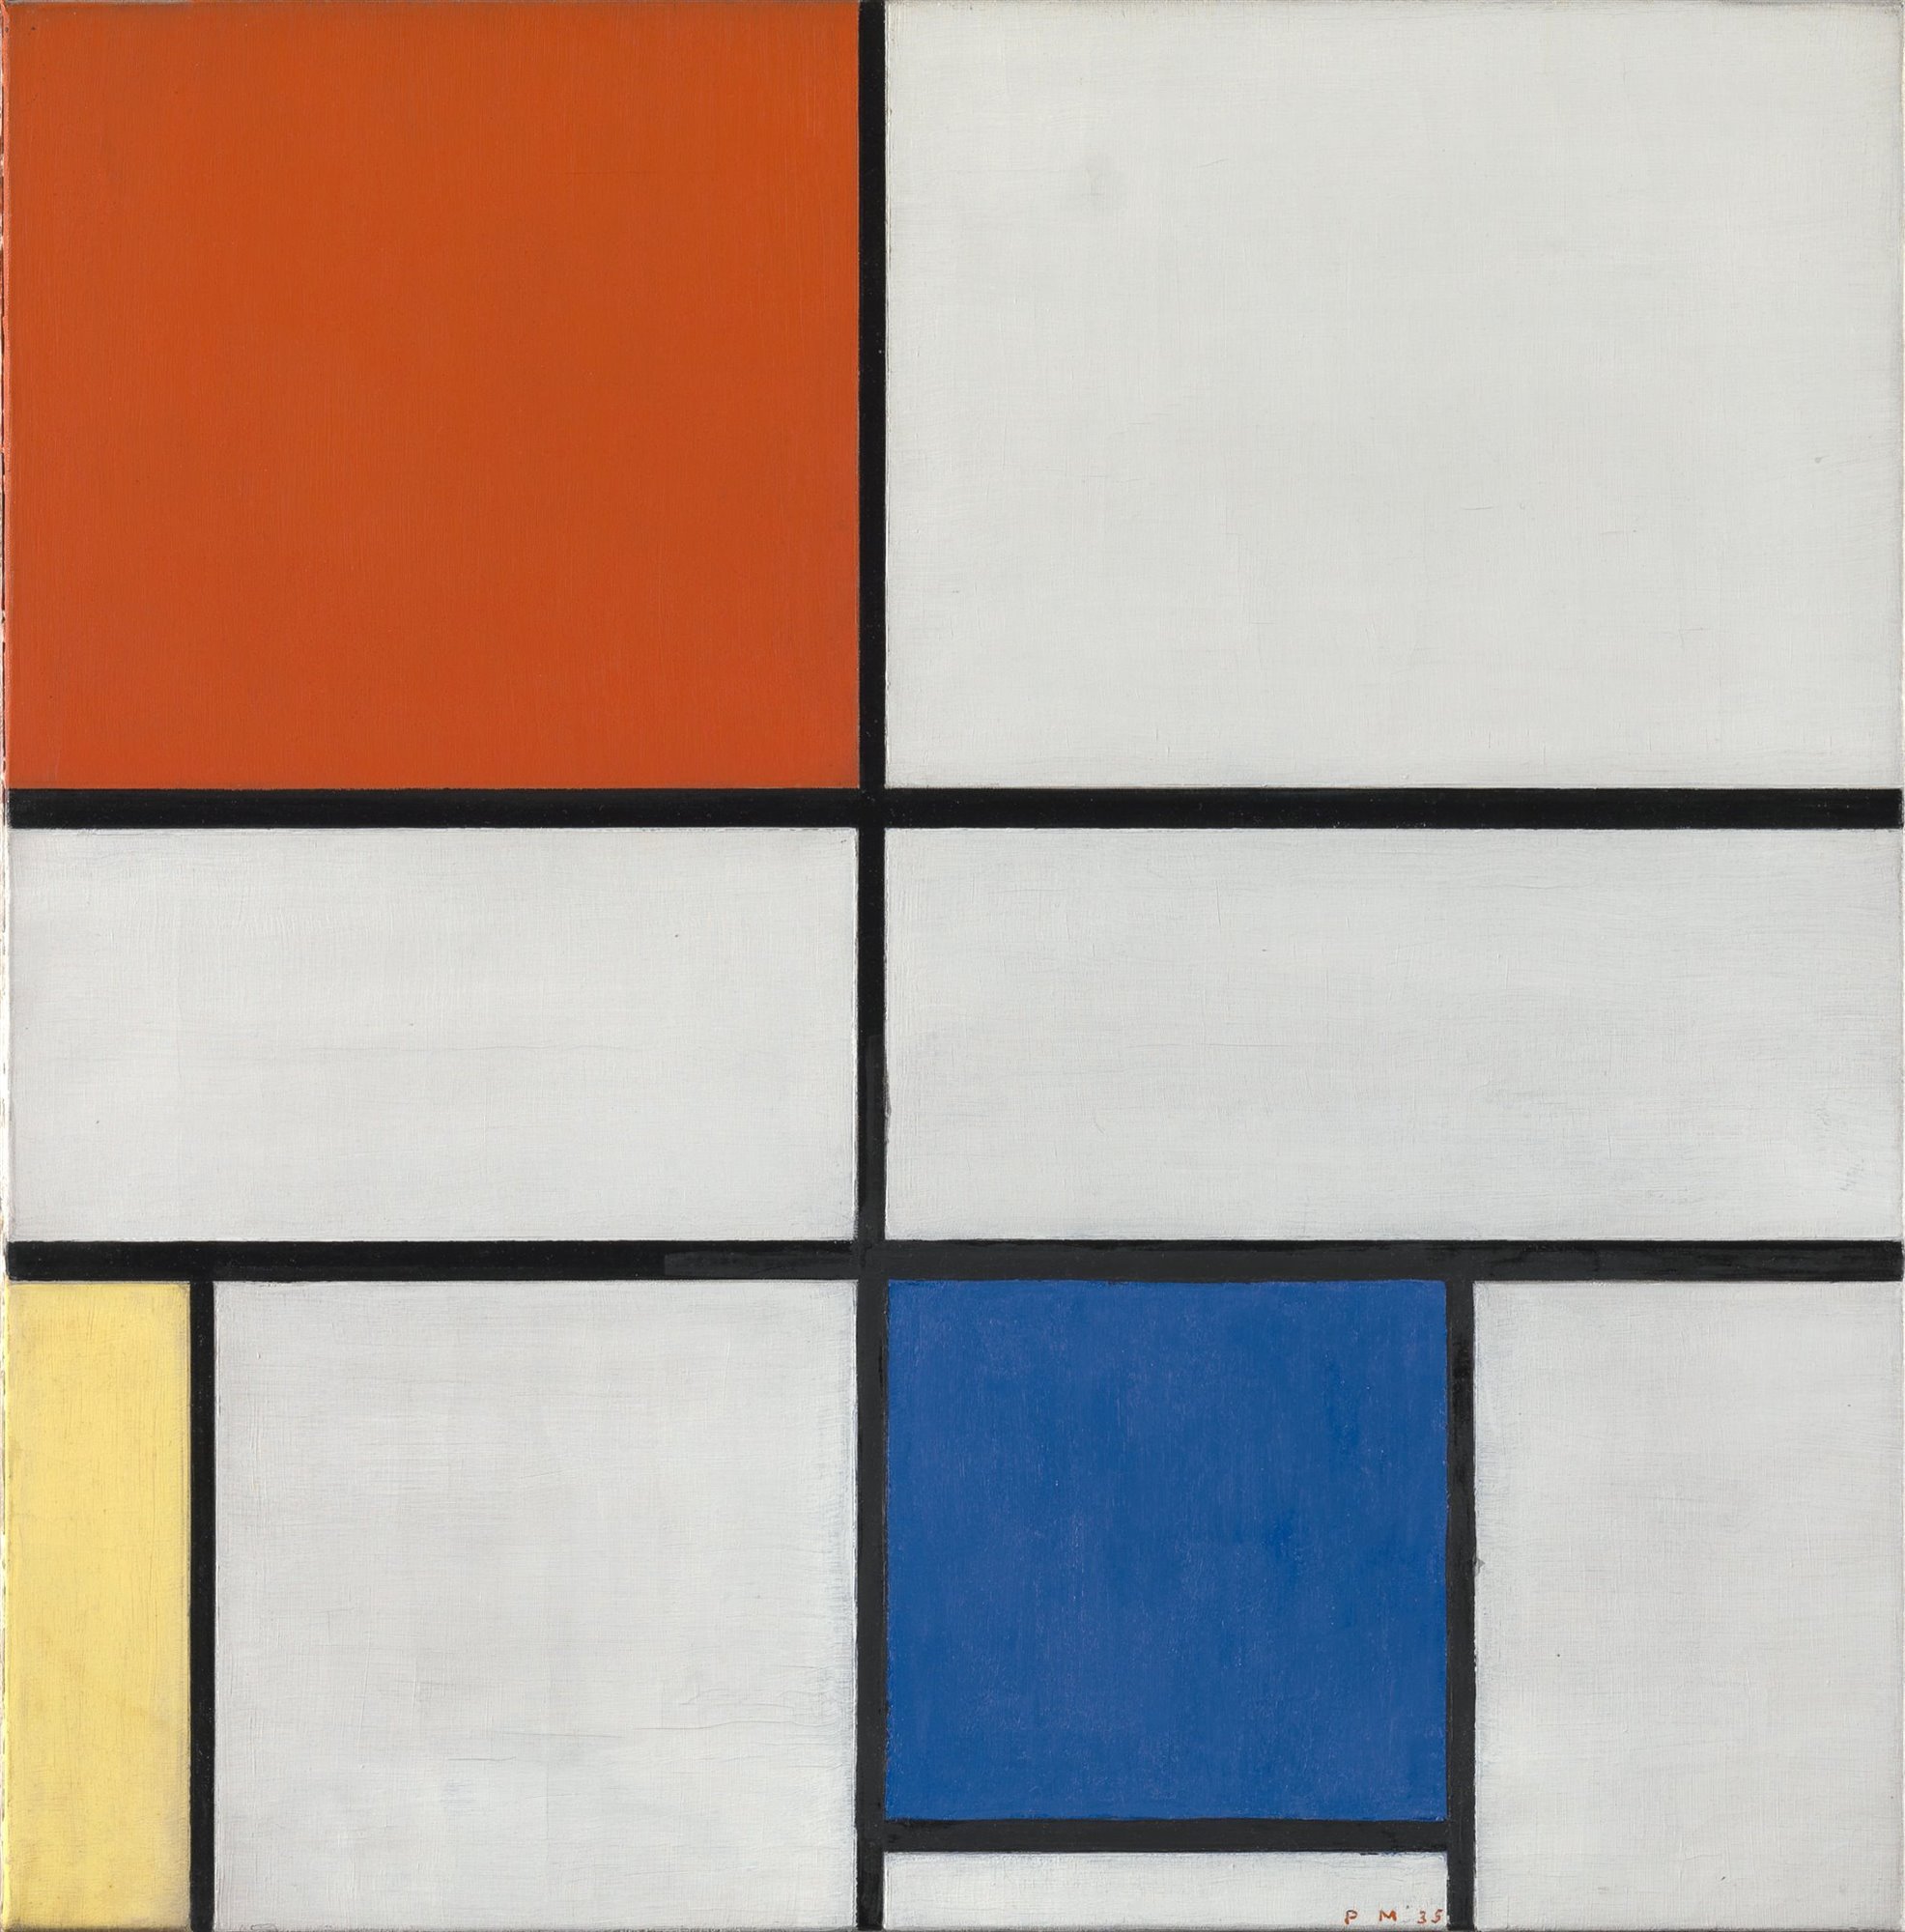 Cuadro de Piet Mondrian